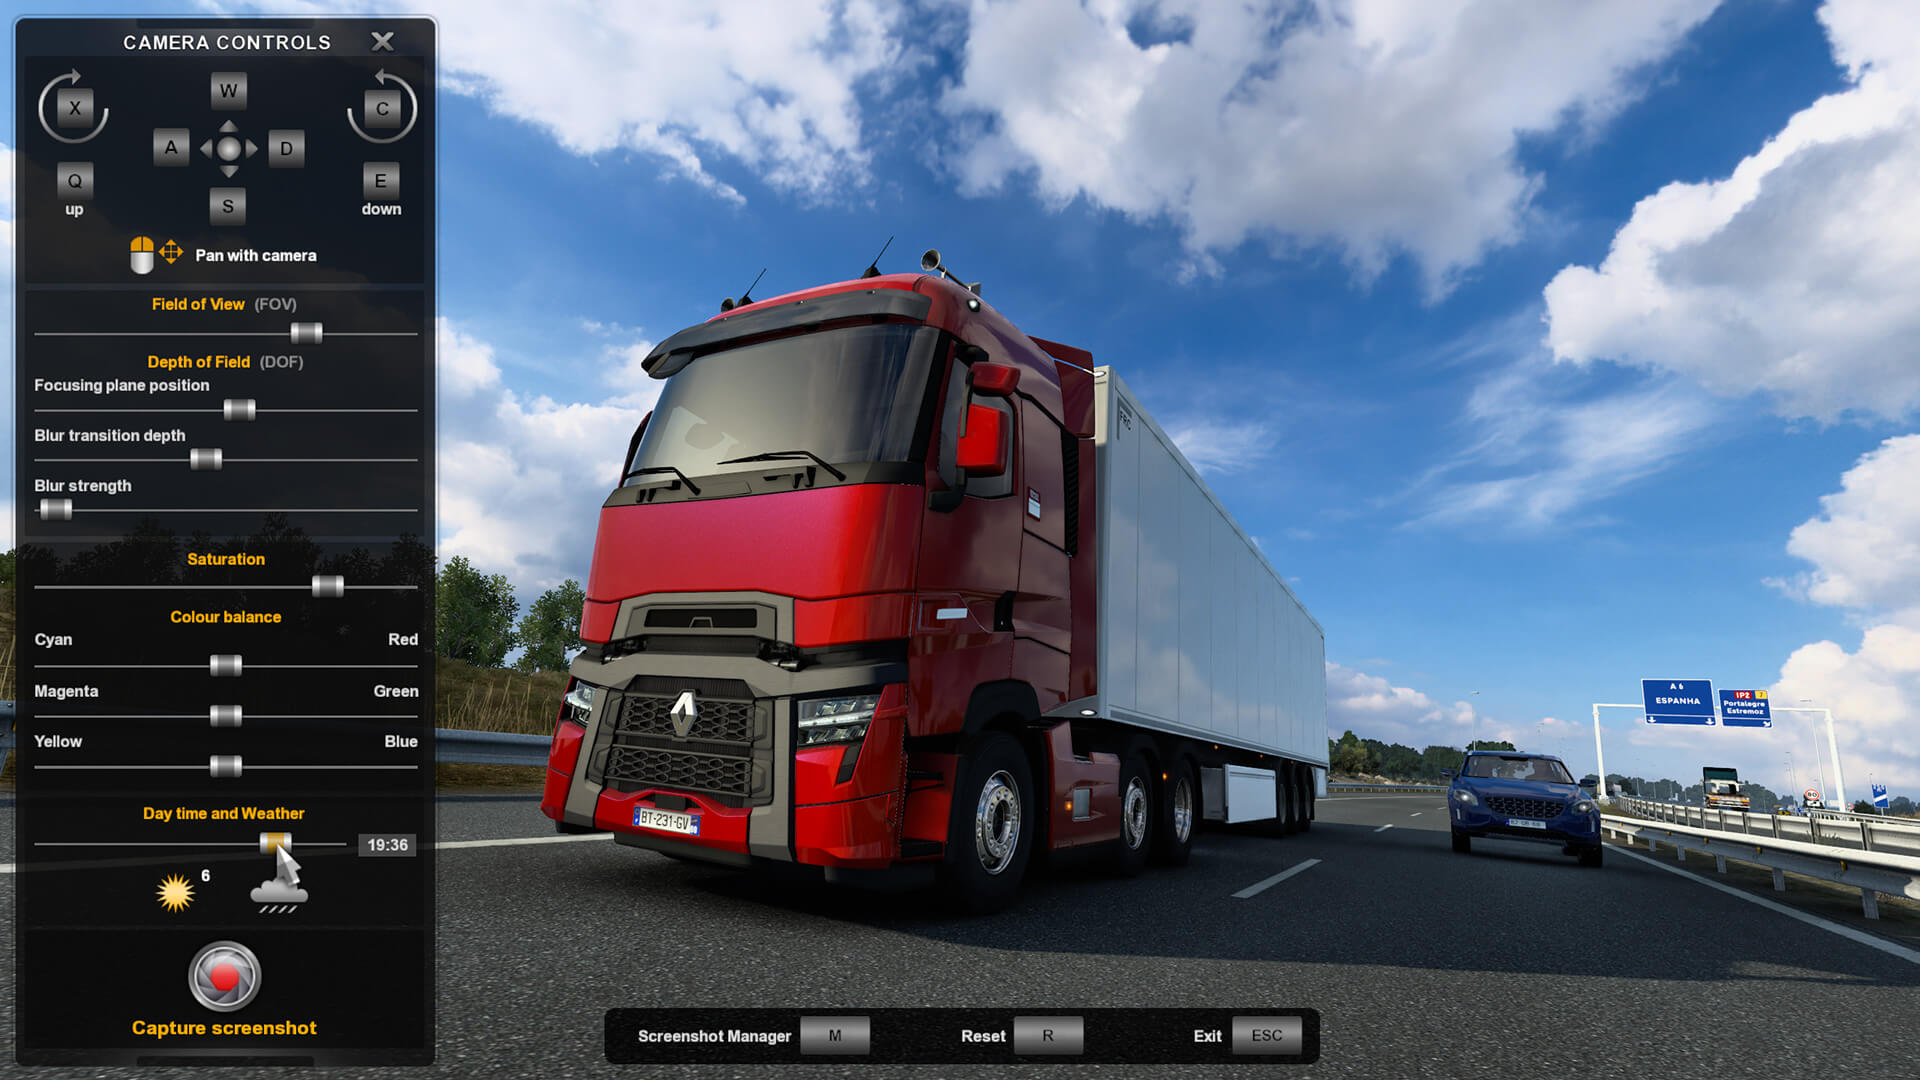 actualización 1.41 de Euro Truck Simulator 2